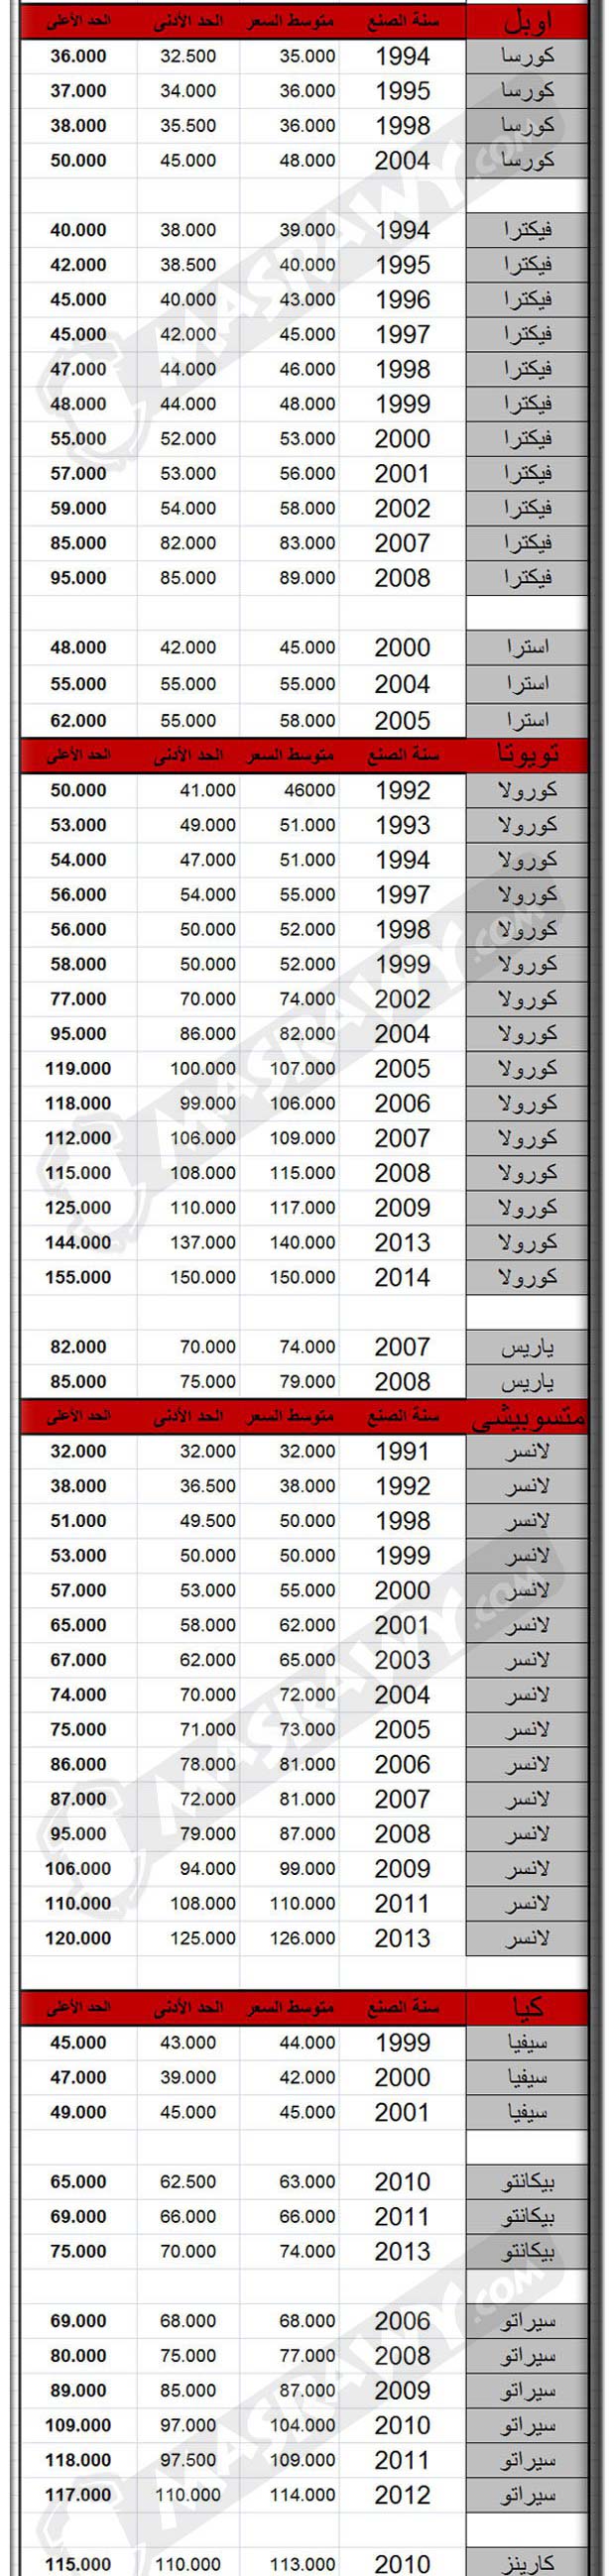 أسعار السيارات المستعملة الاكثر مبيعا في مصر إنفوجراف مصراوى